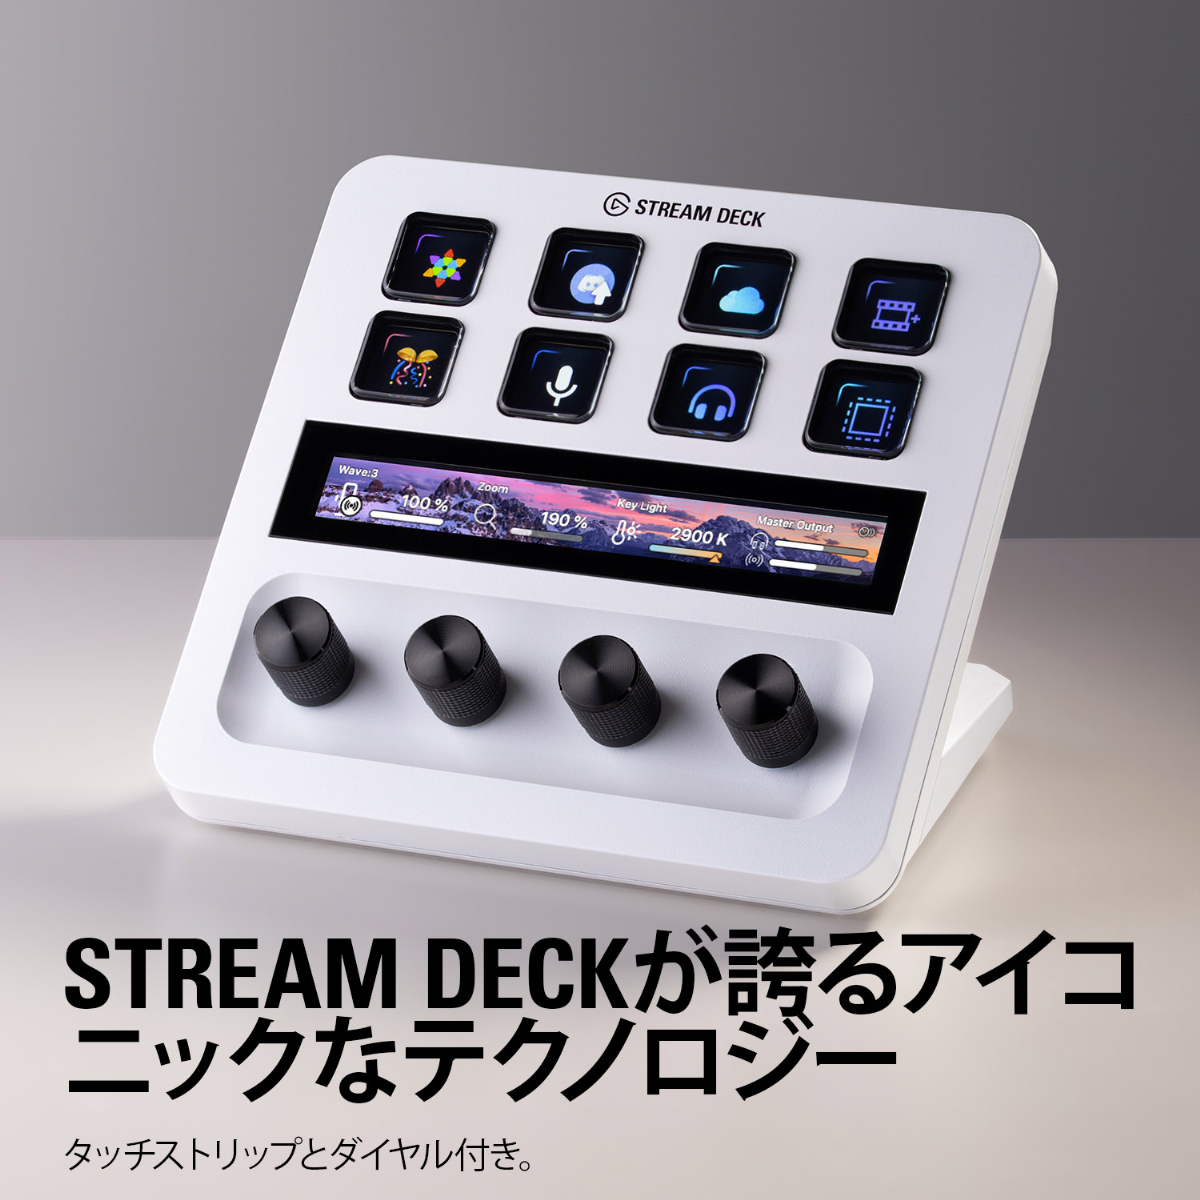 日本正規販売代理店】Stream Deck + Elgato ホワイト タッチパネル付き